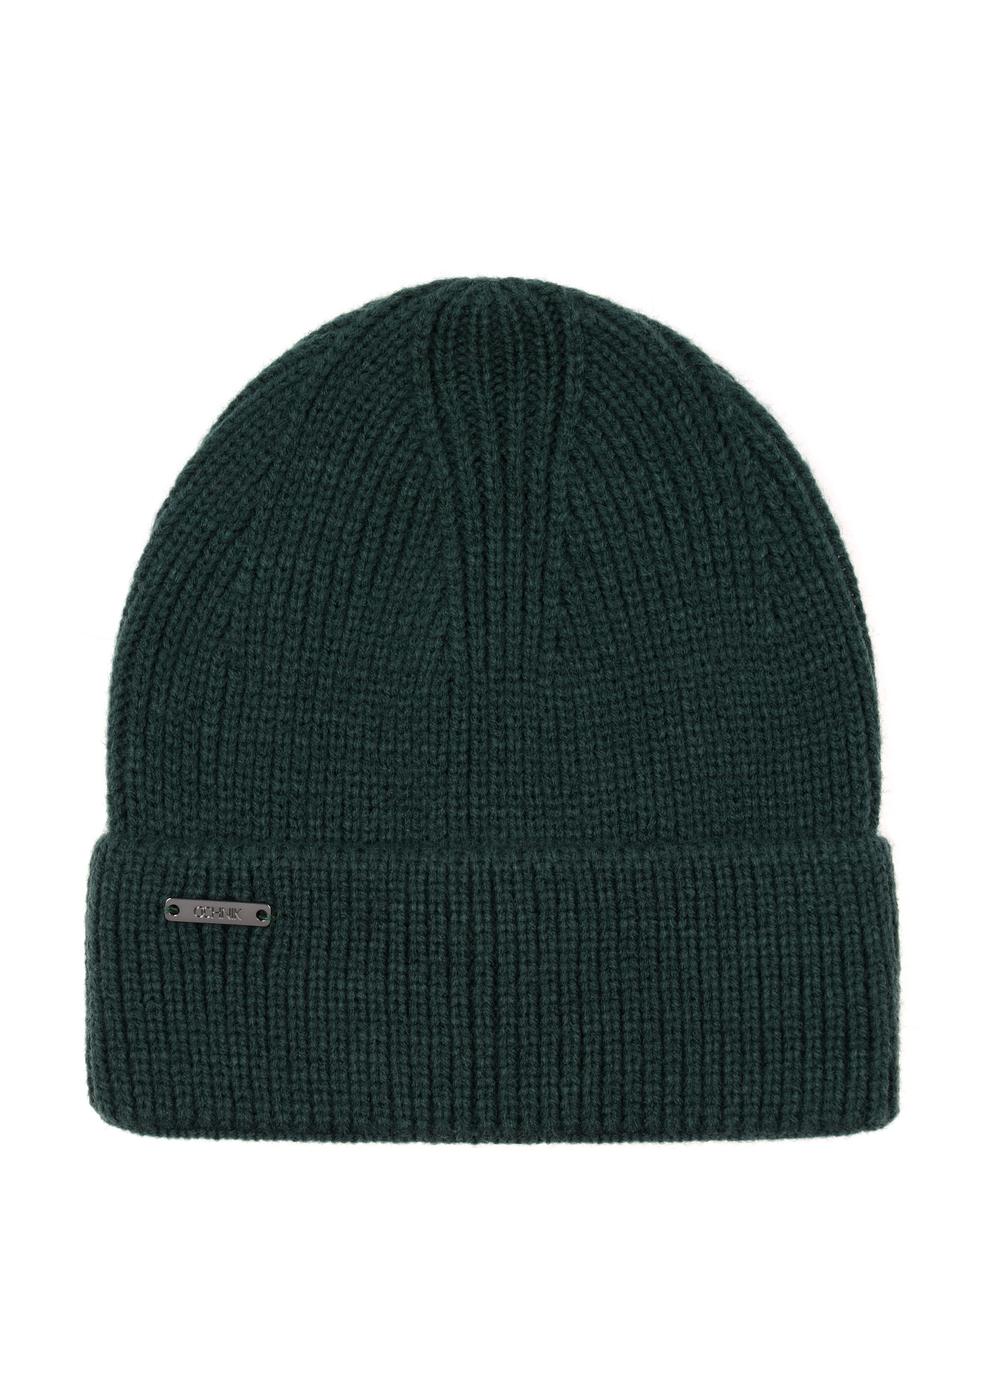 Zielona czapka zimowa damska CZADT-0162-54(Z23)